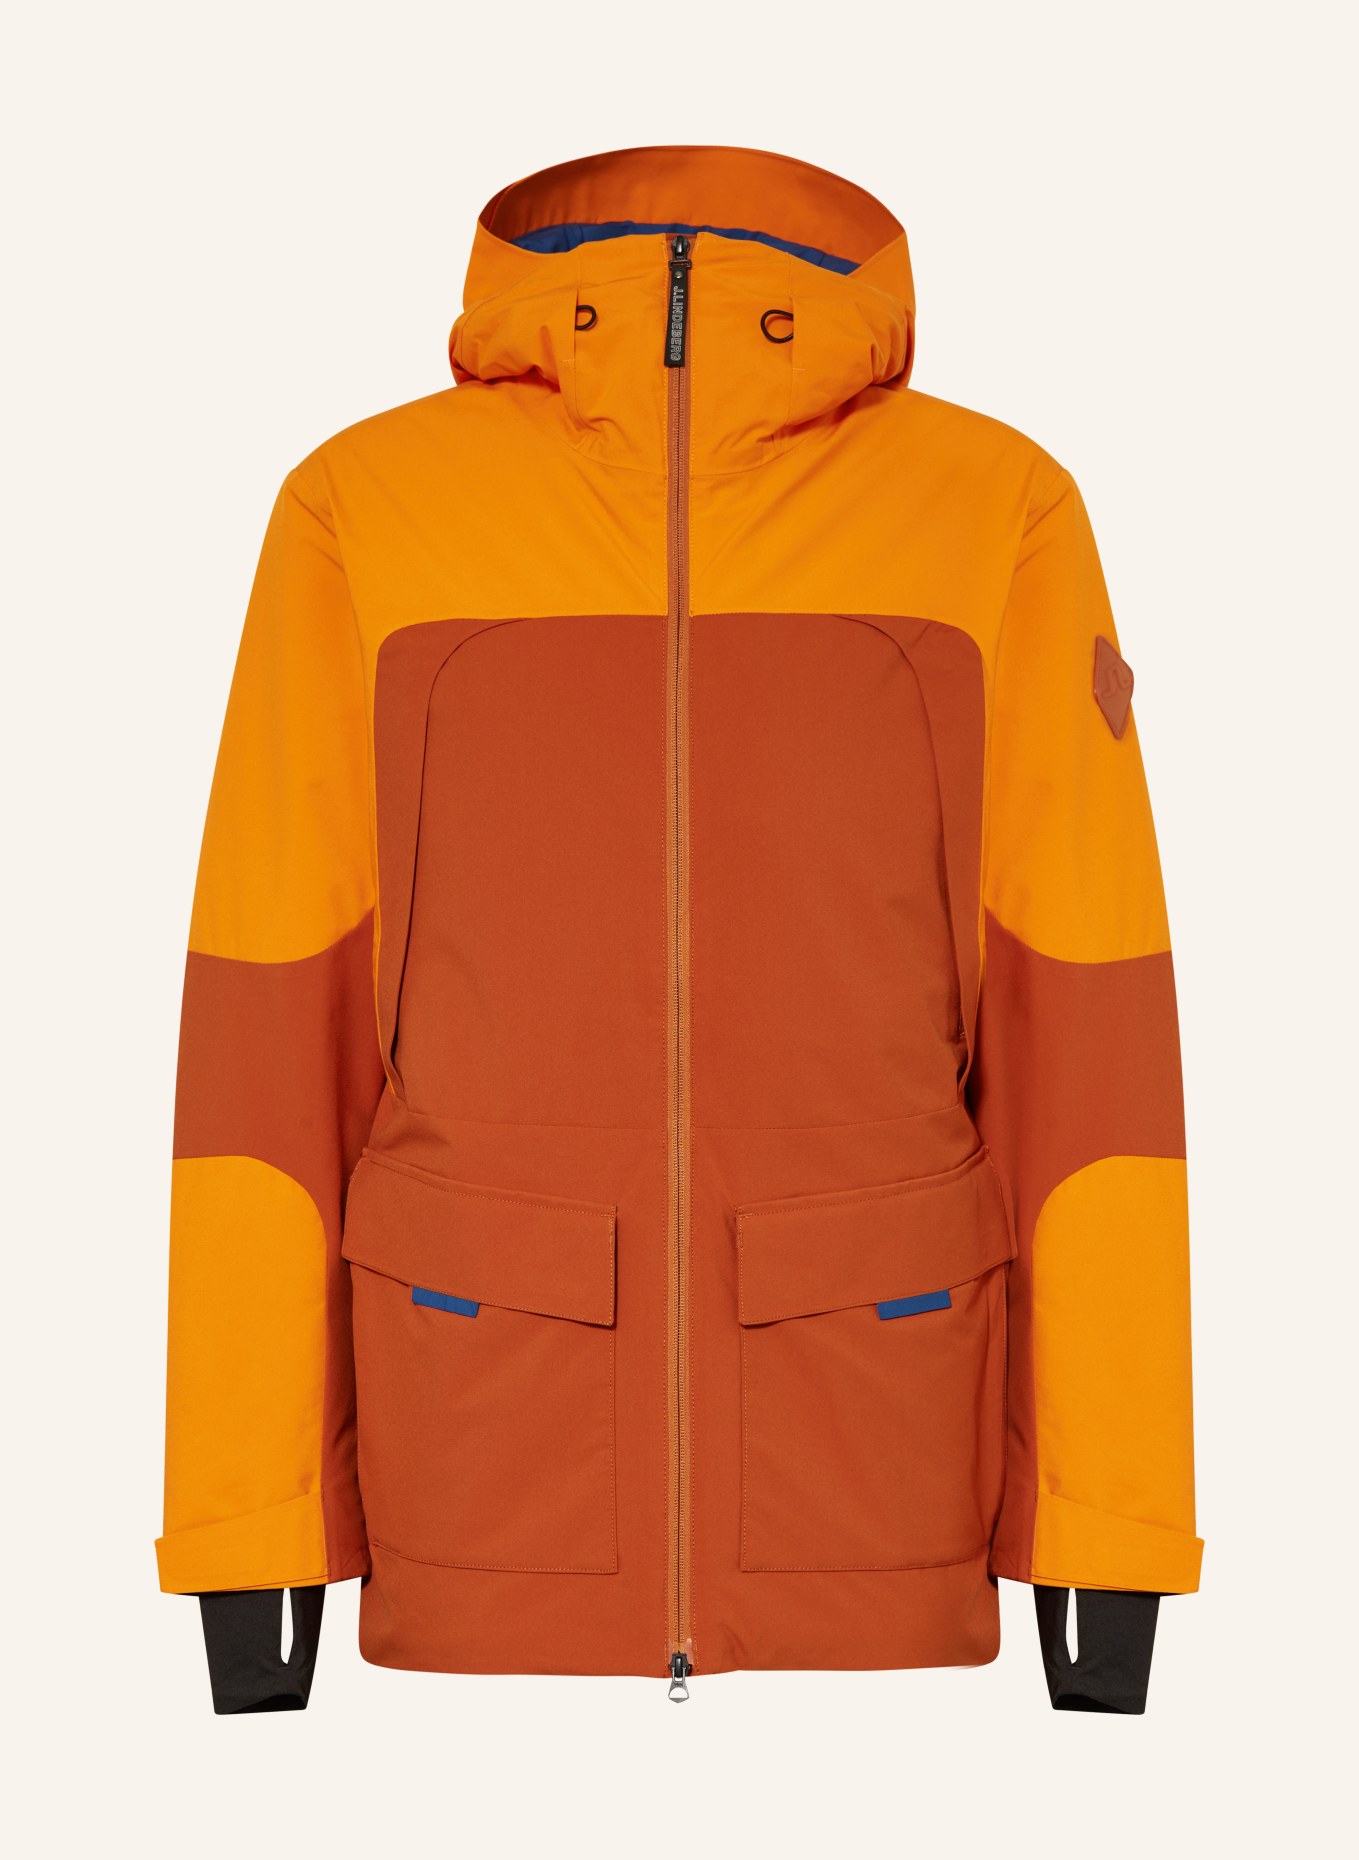 in Ski J.LINDEBERG blue jacket dark orange/ orange/